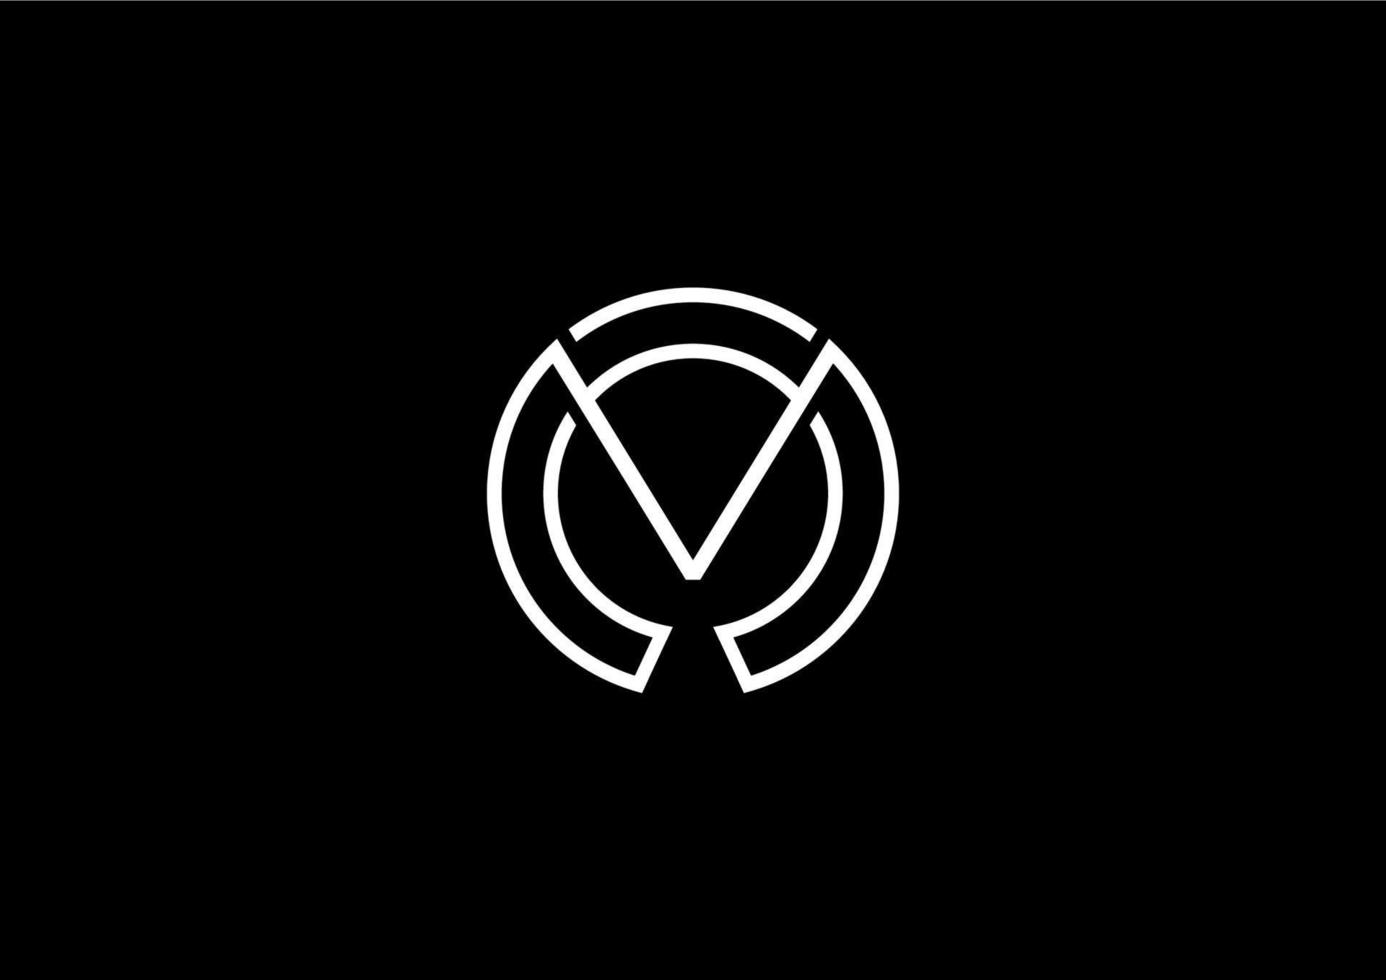 letra m elementos do modelo de design de ícone de logotipo vetor